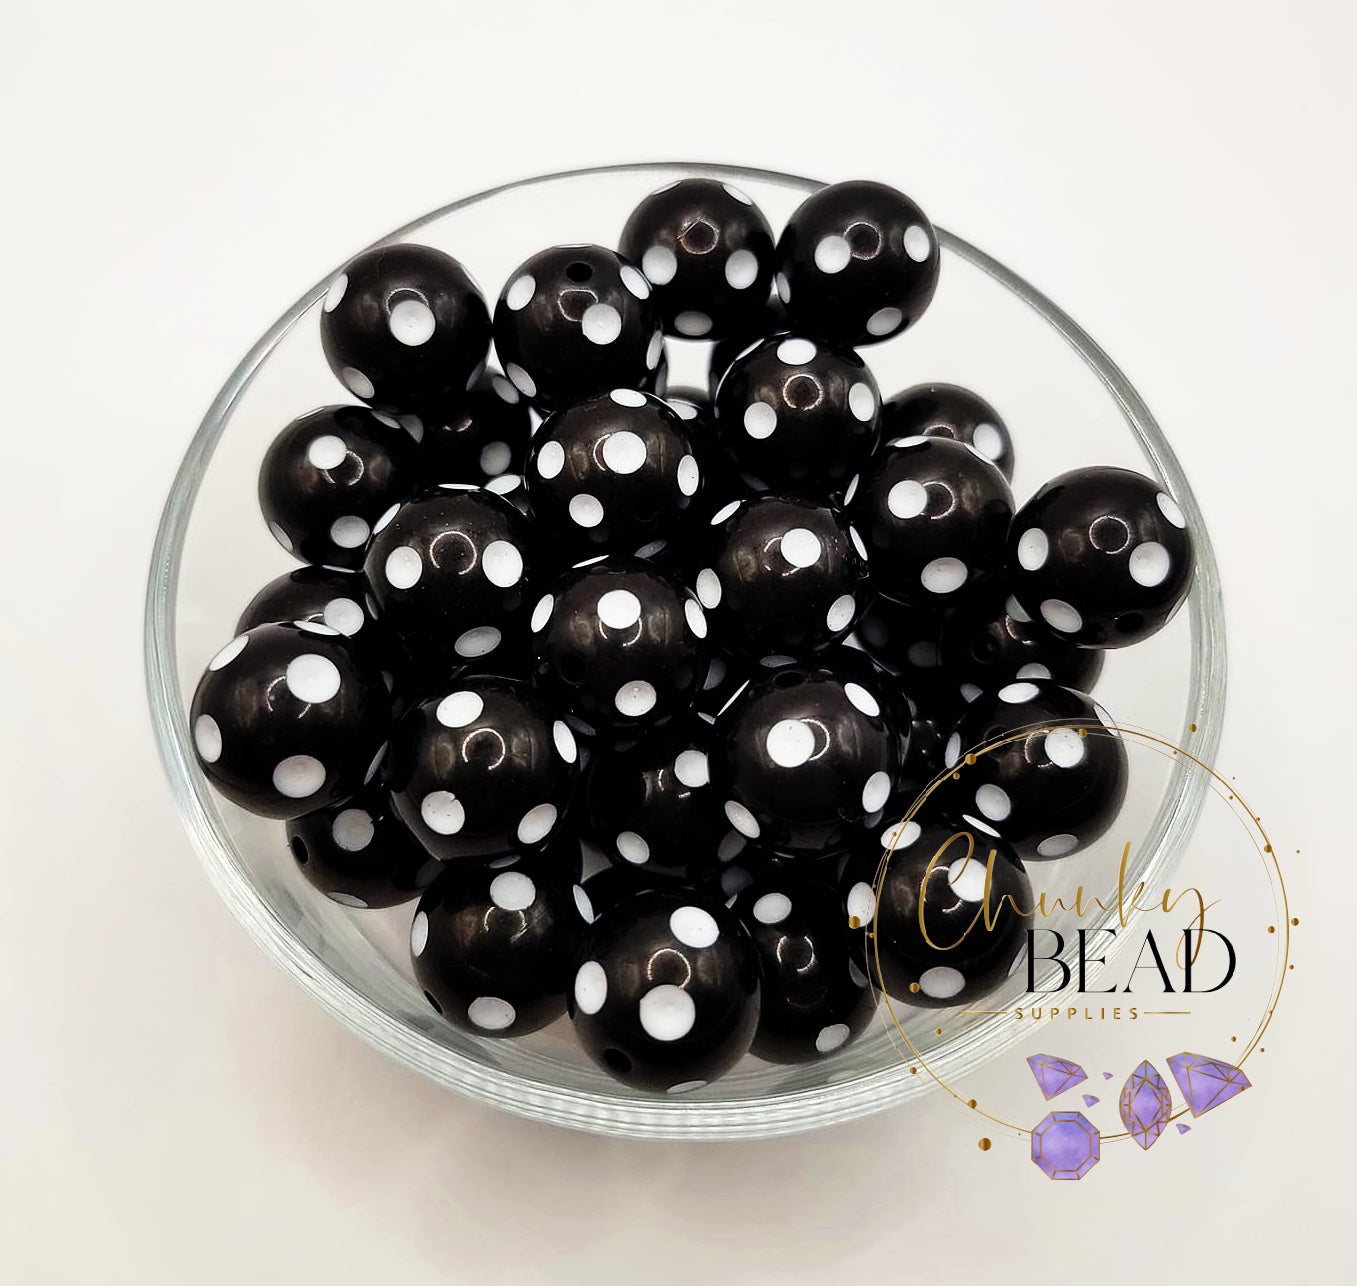 20mm Black Polka Dot Beads